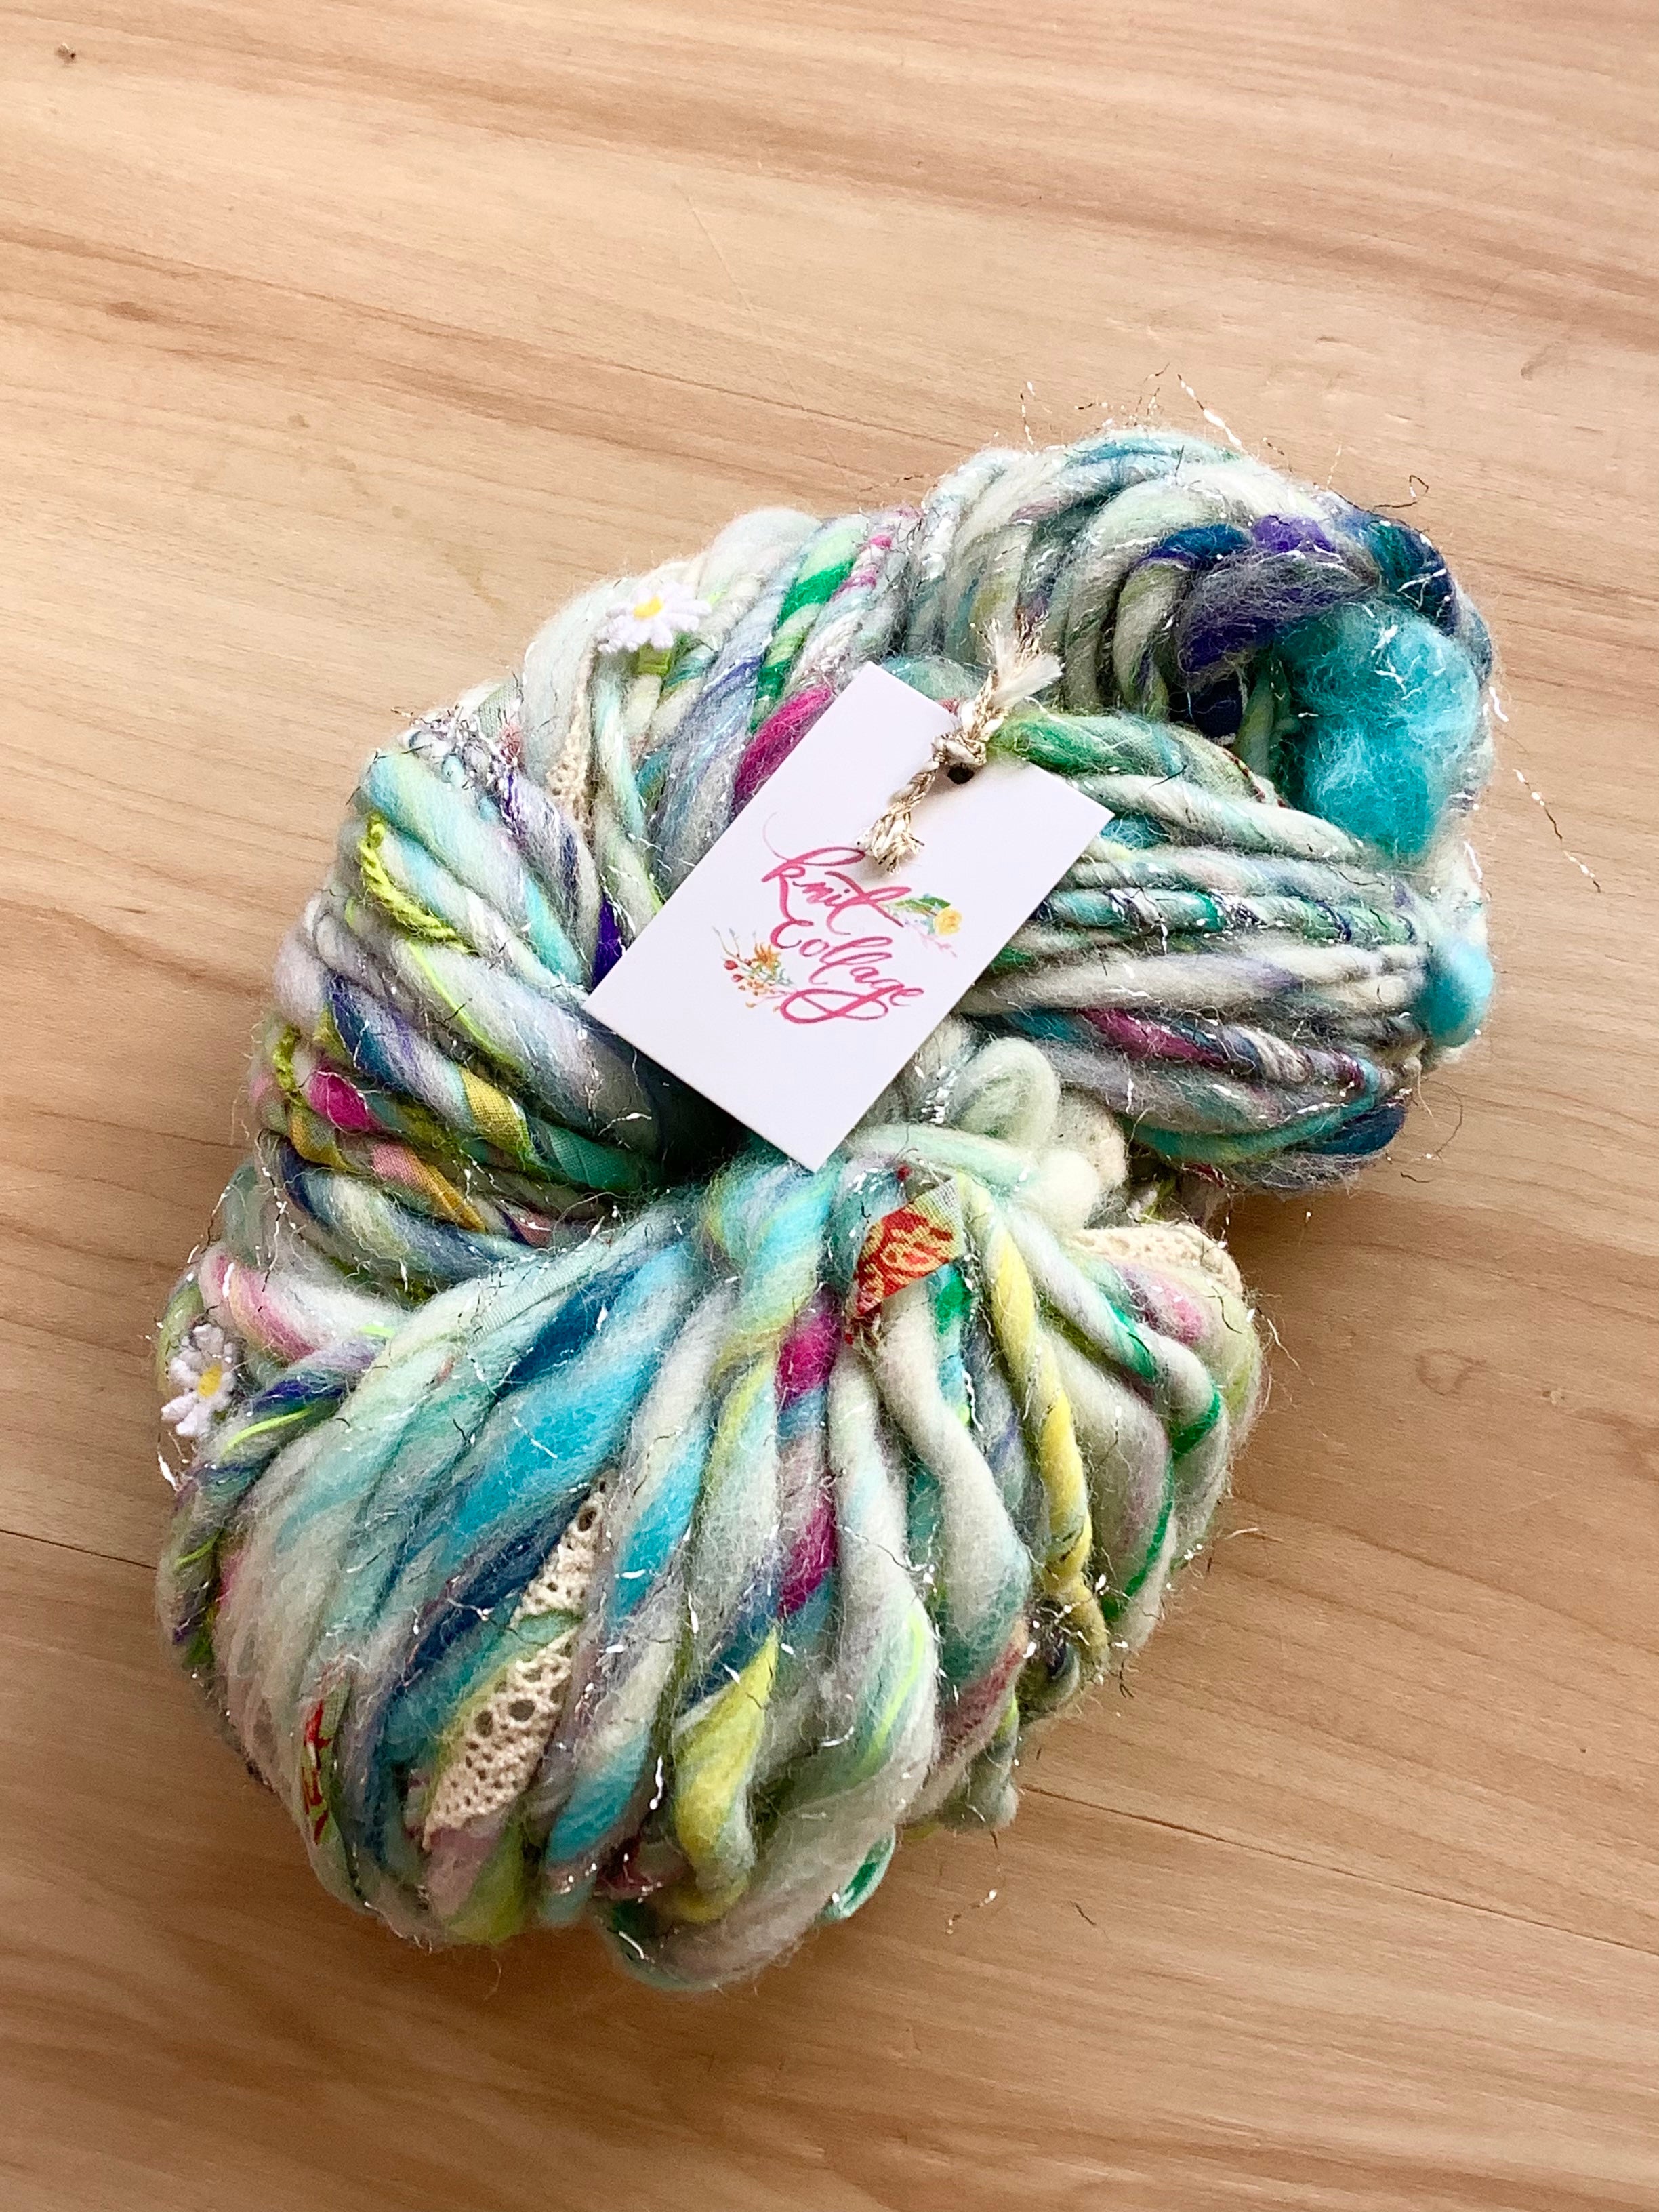 Sea Siren - Daisy Chain yarn from Knit Collage